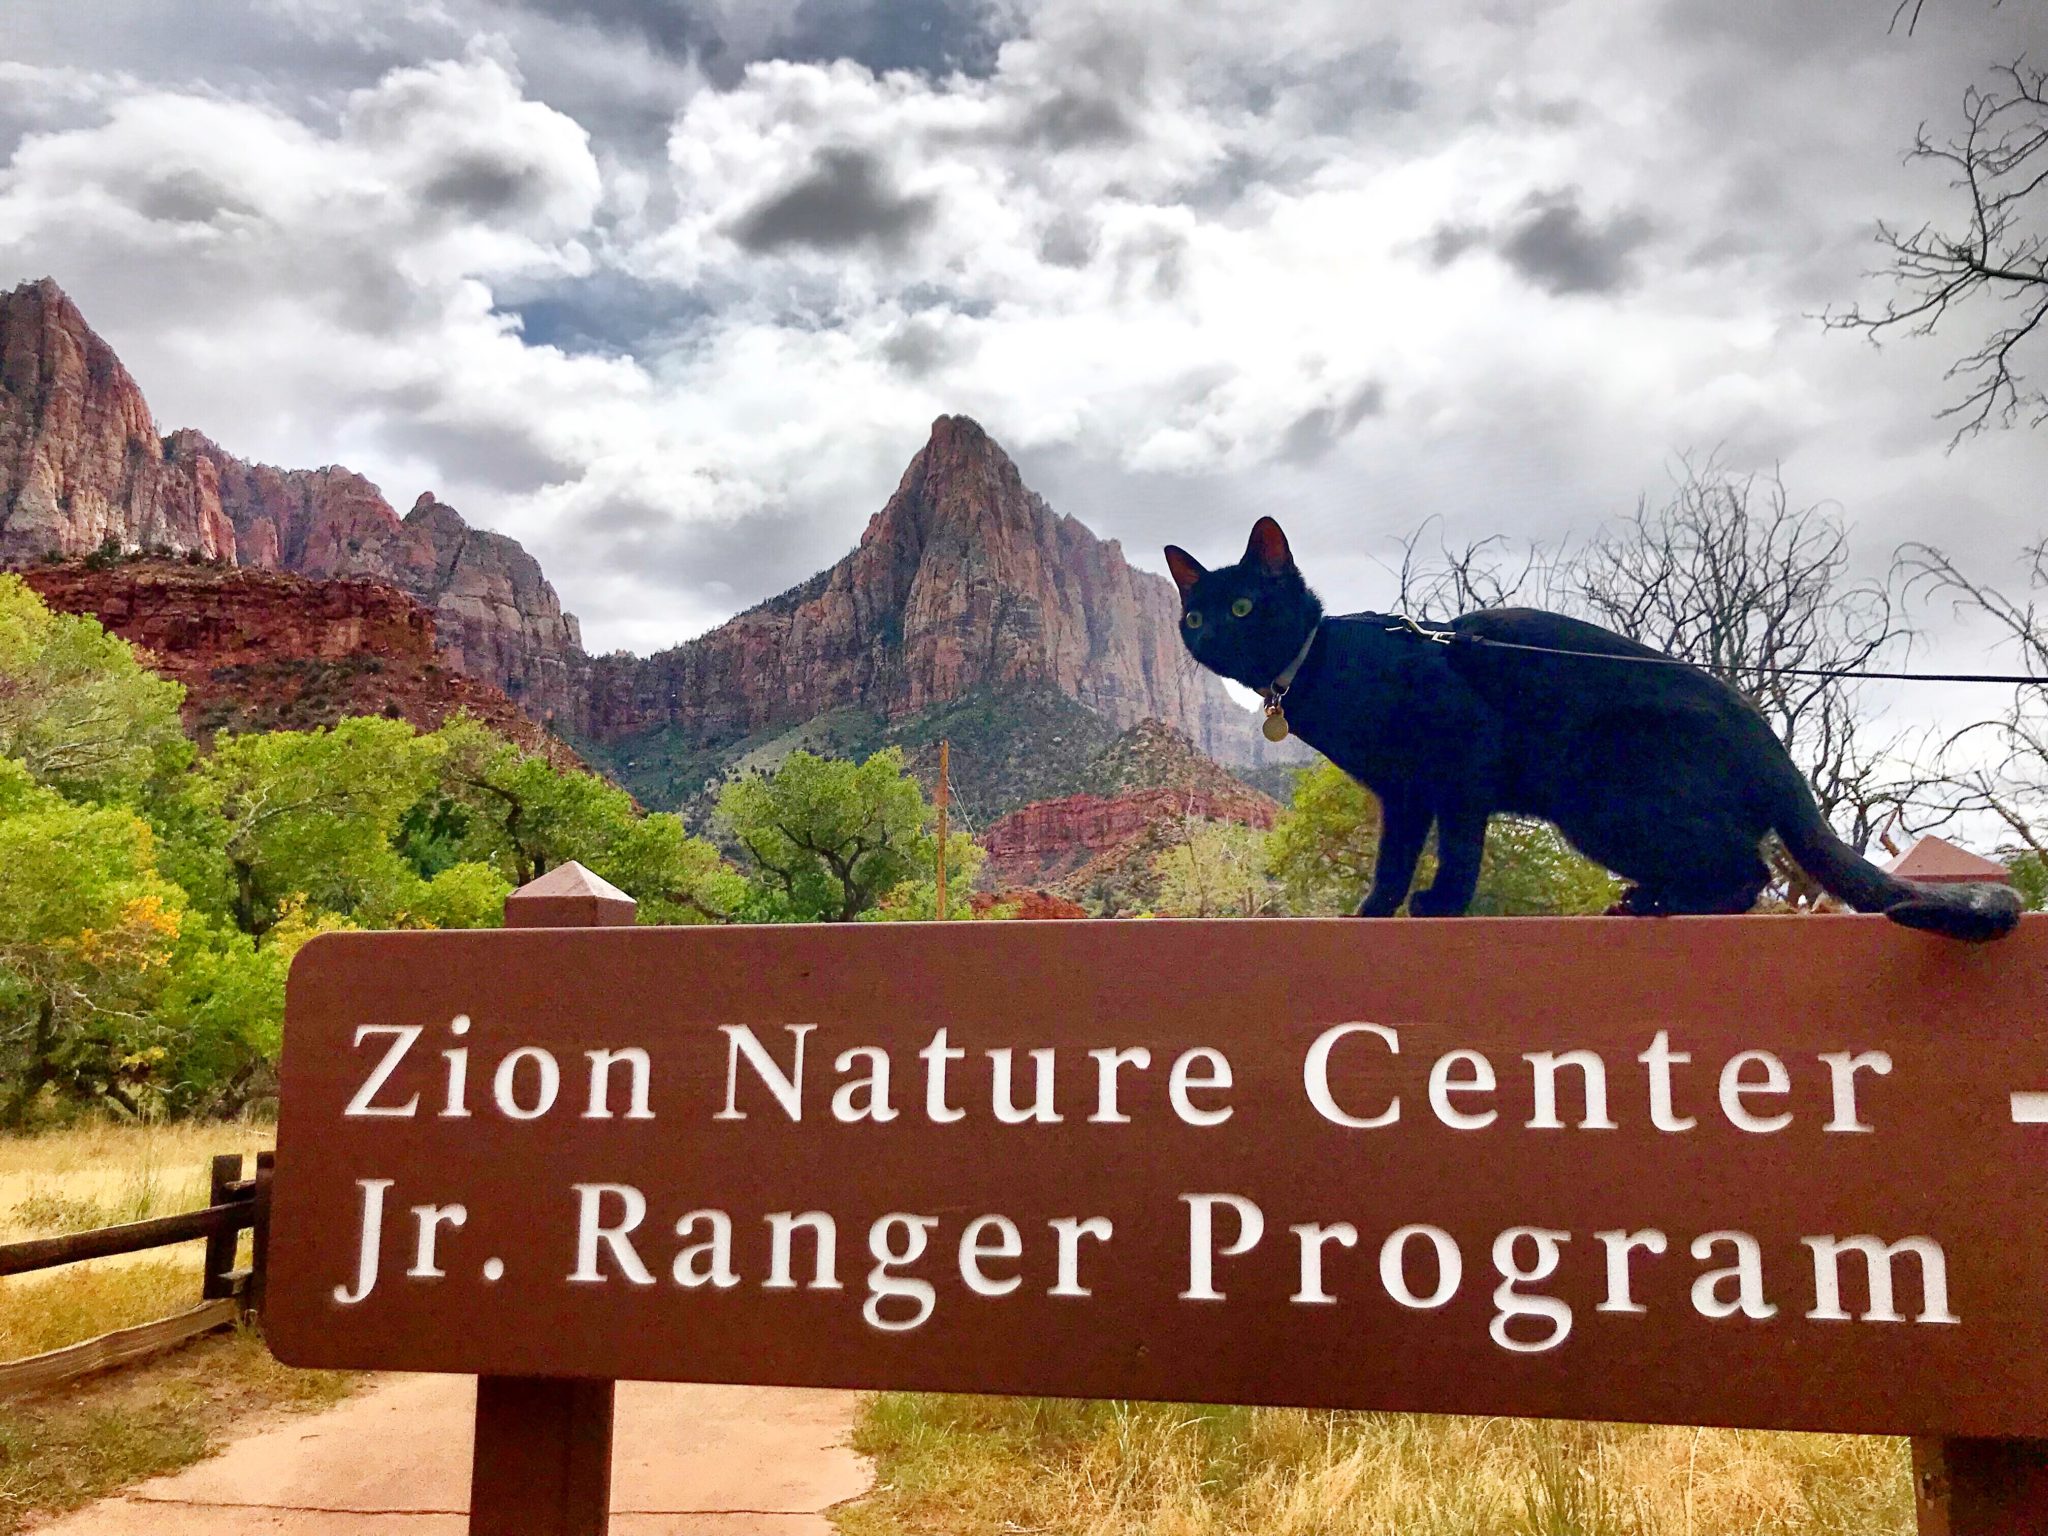 Cash adventure cat explores Zion National Park on a leash